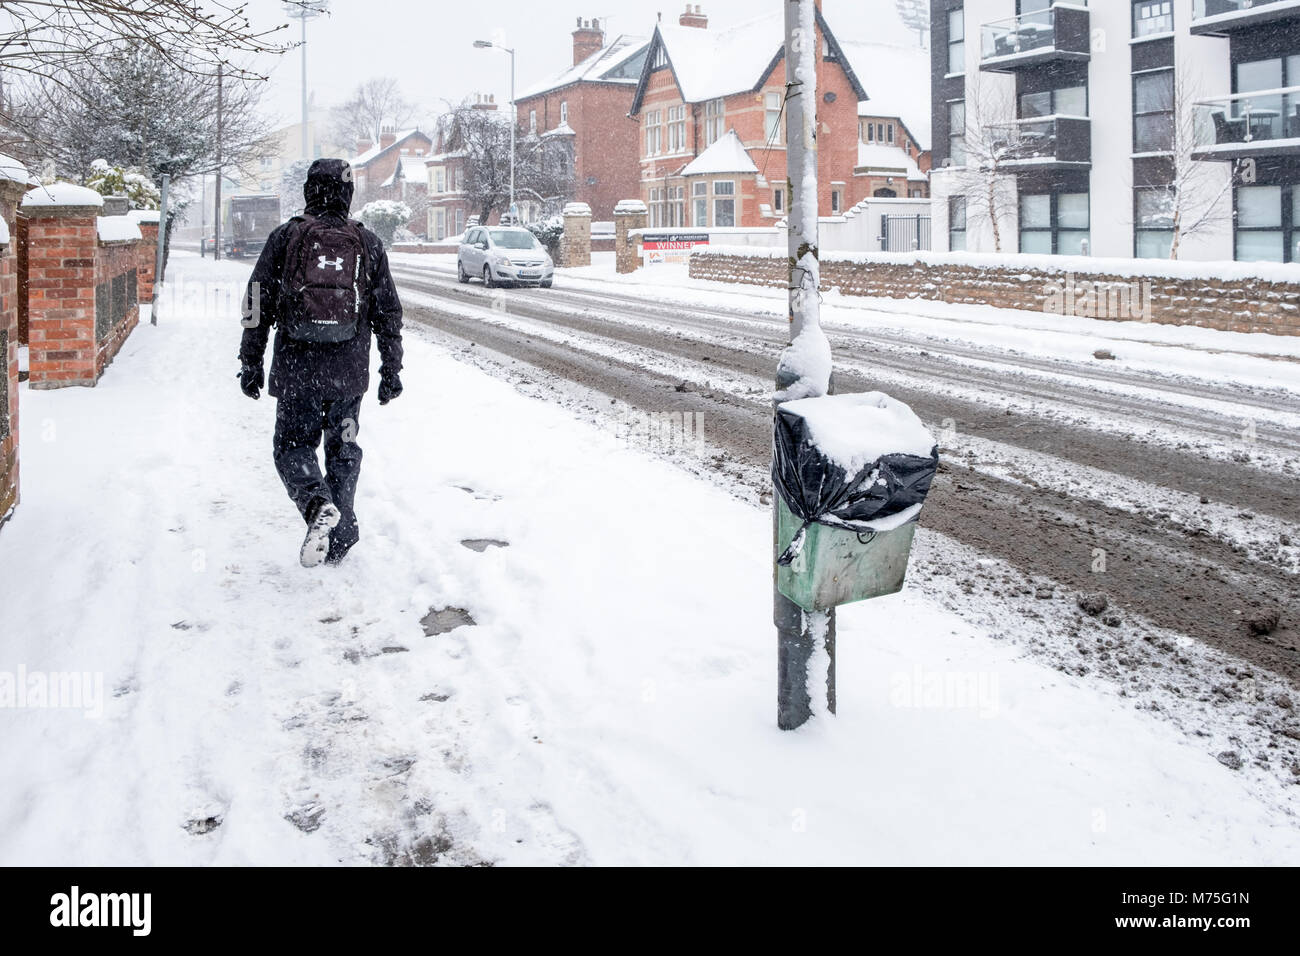 Día de invierno frío. Una persona caminando por una acera con la caída de nieve y una carretera con nieve y barro, West Bridgford, Nottinghamshire, Inglaterra, Reino Unido. Foto de stock